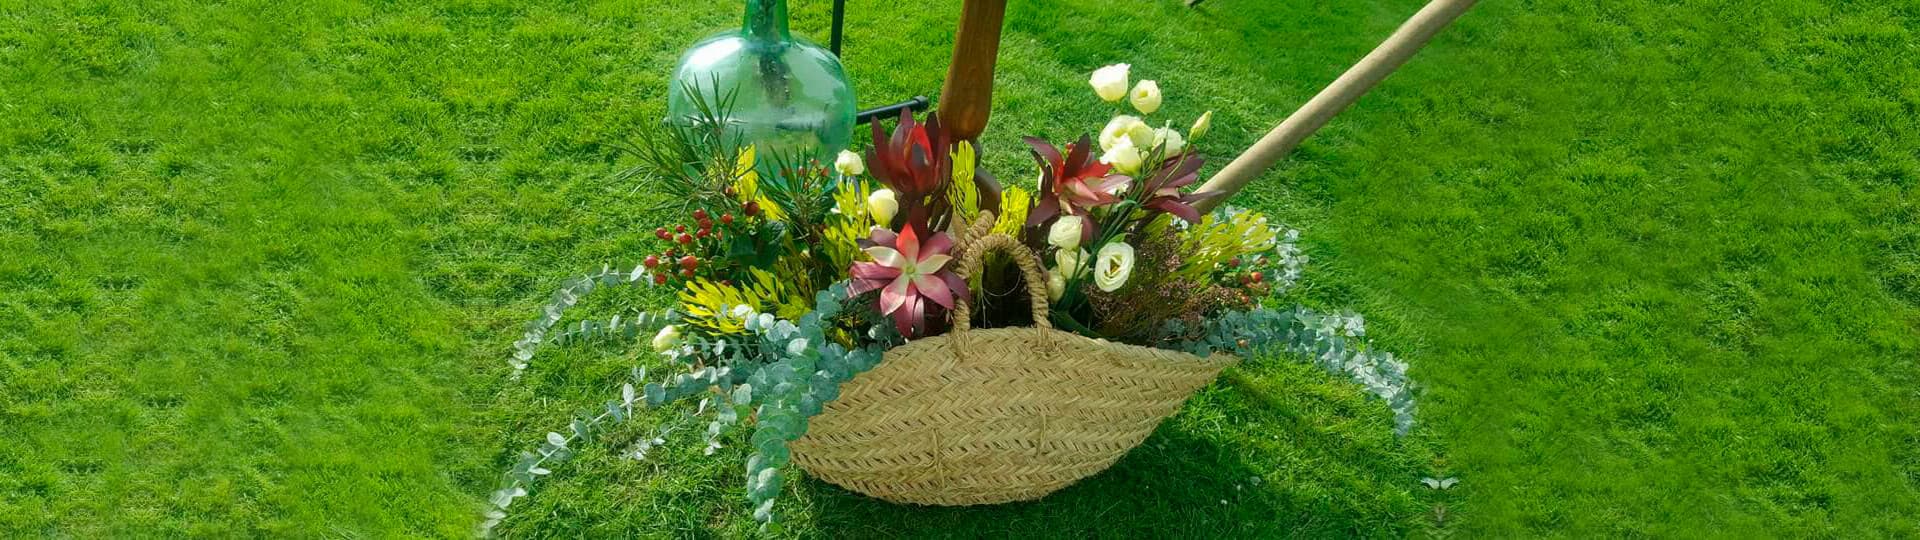 Decoración floral y reparto de flores a domicilio en Lugo